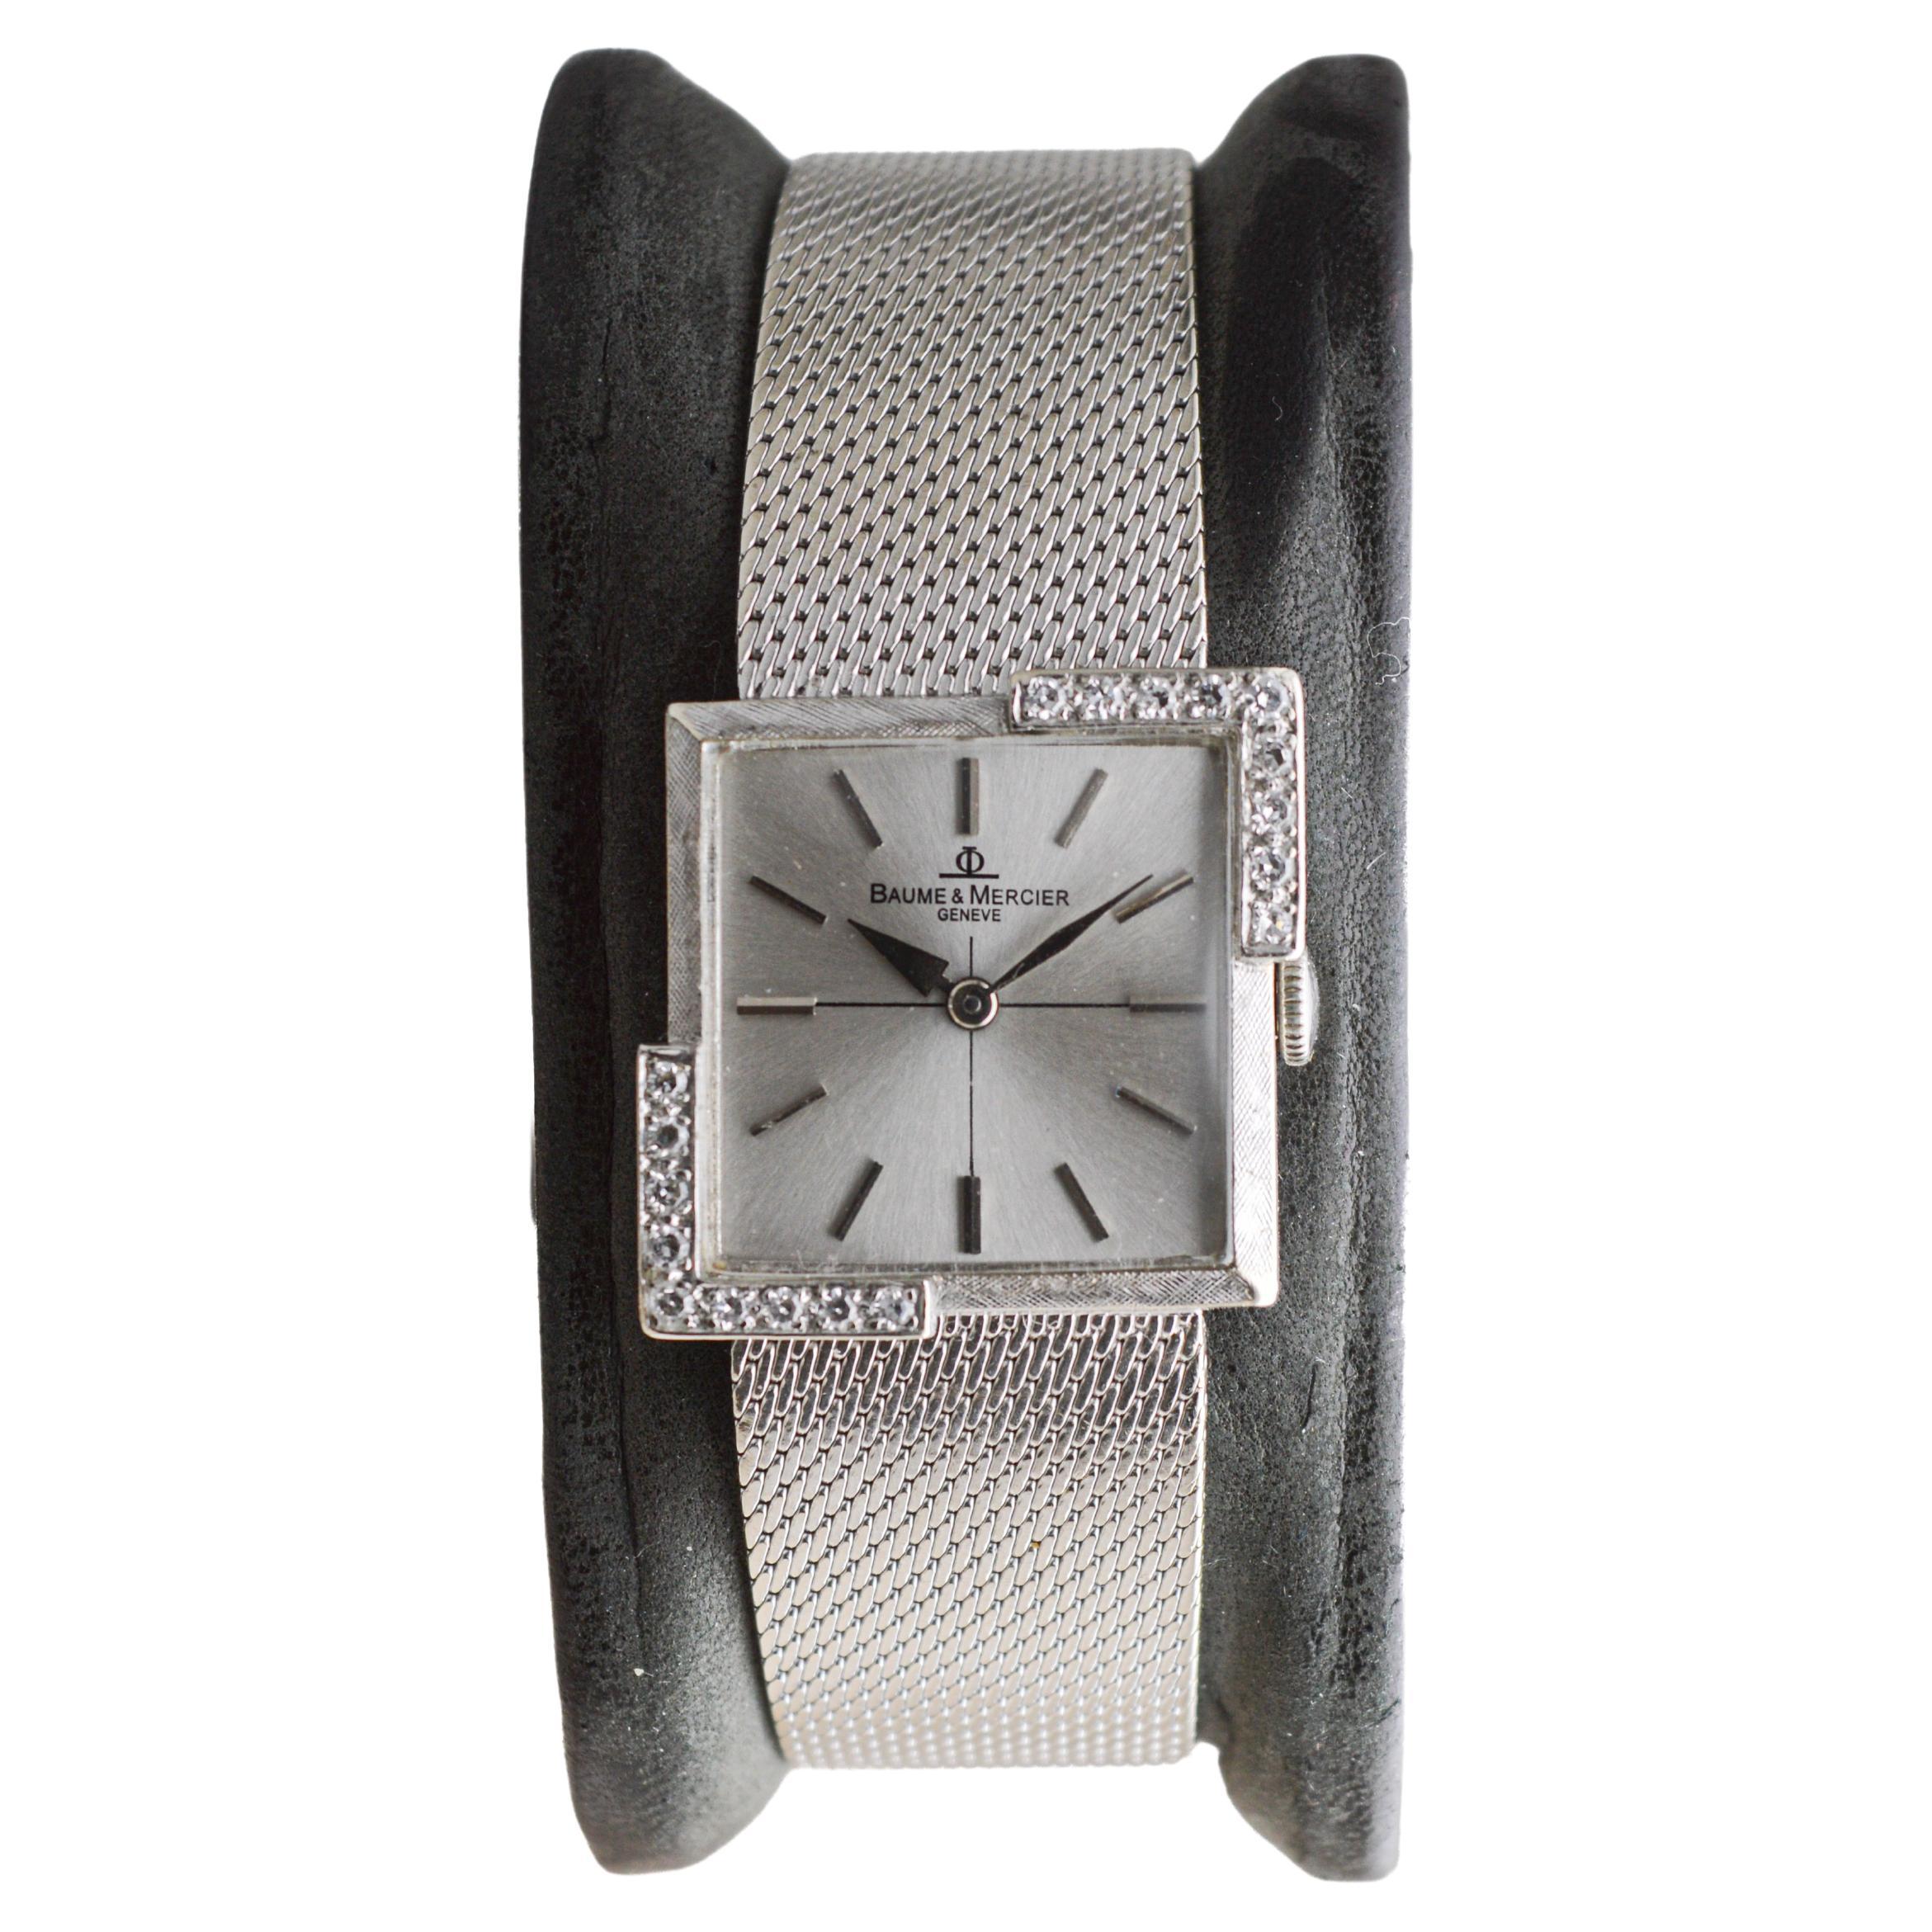 USINE / MAISON : Baume Mercier Watch Company
STYLE / RÉFÉRENCE : Bracelet  Style Dress Watch
METAL / MATERIAL : 14Kt. l'or blanc massif 
CIRCA / ANNÉE : années 1960 
DIMENSIONS / TAILLE : Longueur 23mm X Largeur 23mm
MOUVEMENT / CALIBRE : Remontage